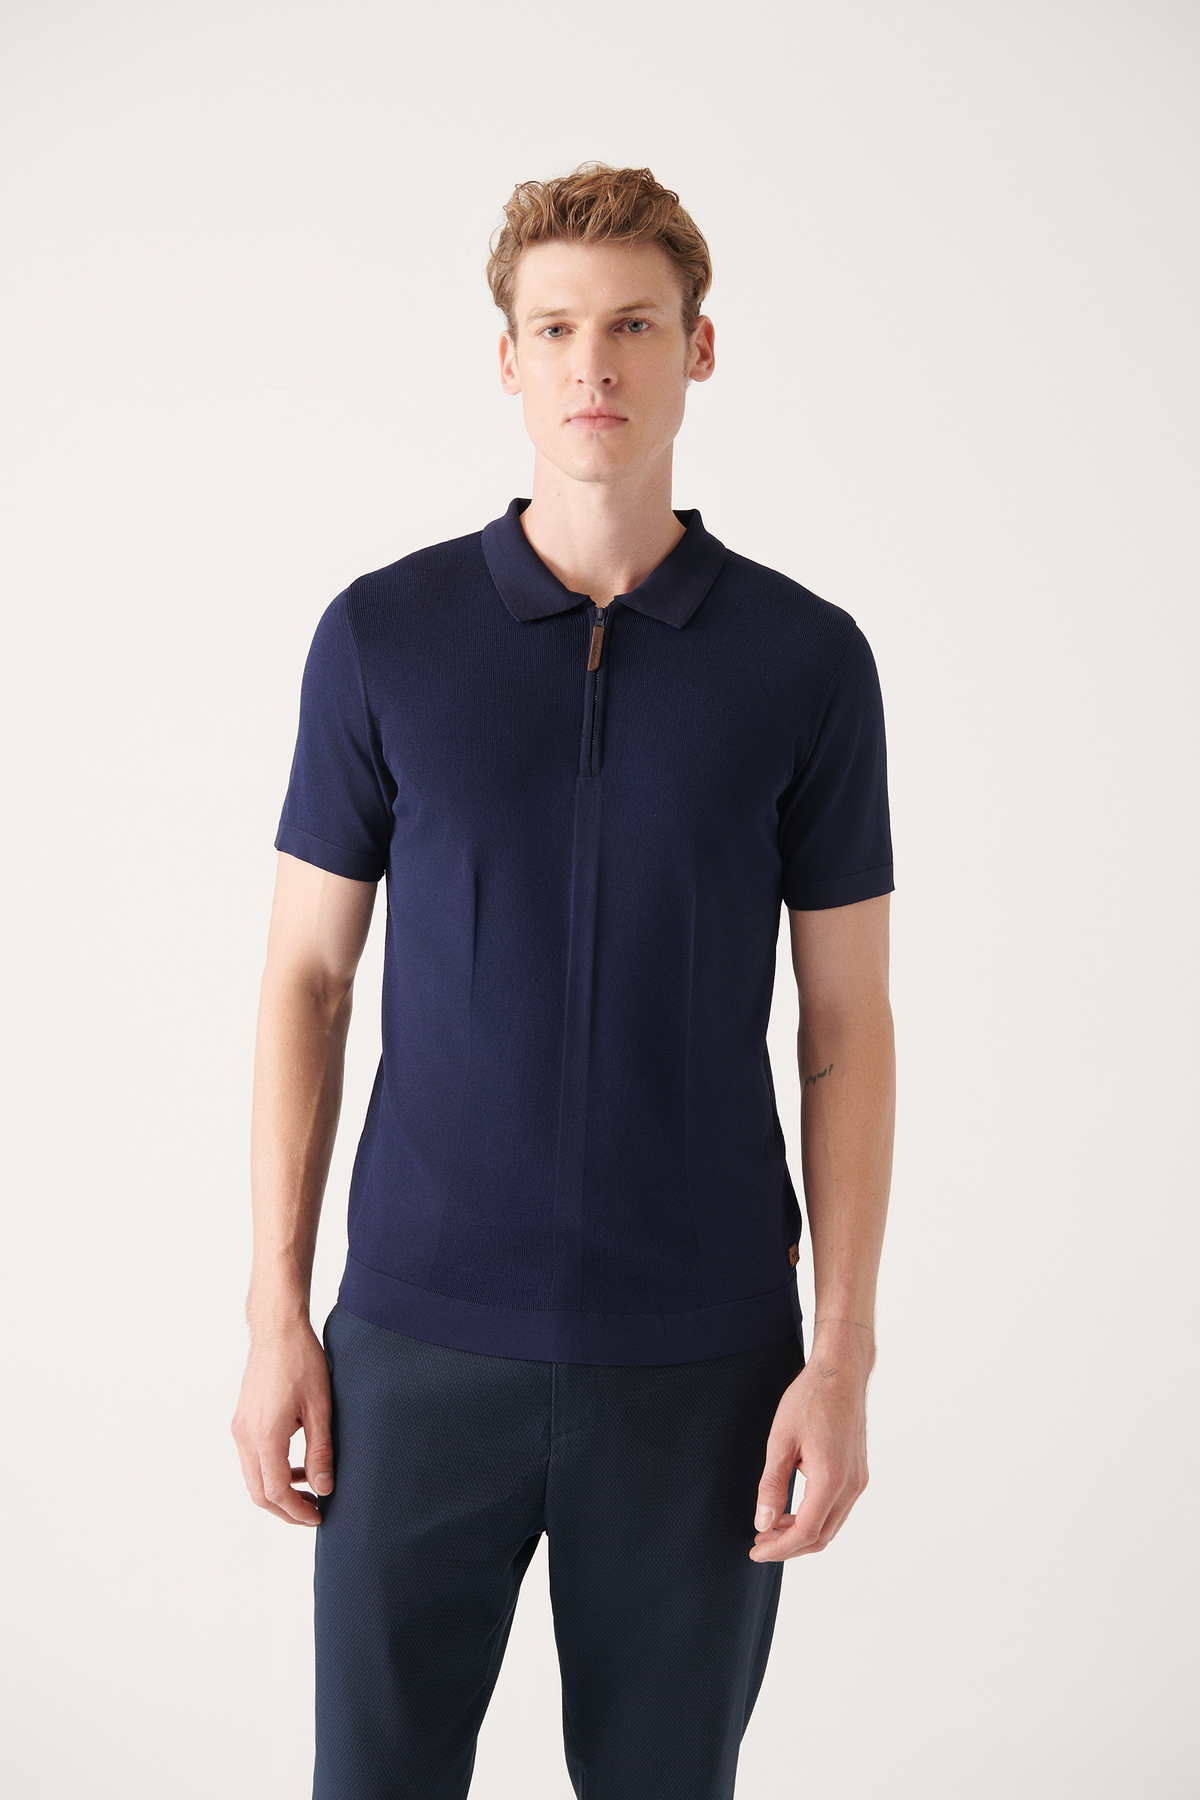 Avva Men's Navy Blue Polo Neck Zippered Rayon Standard Fit Regular Cut Knitwear T-shirt